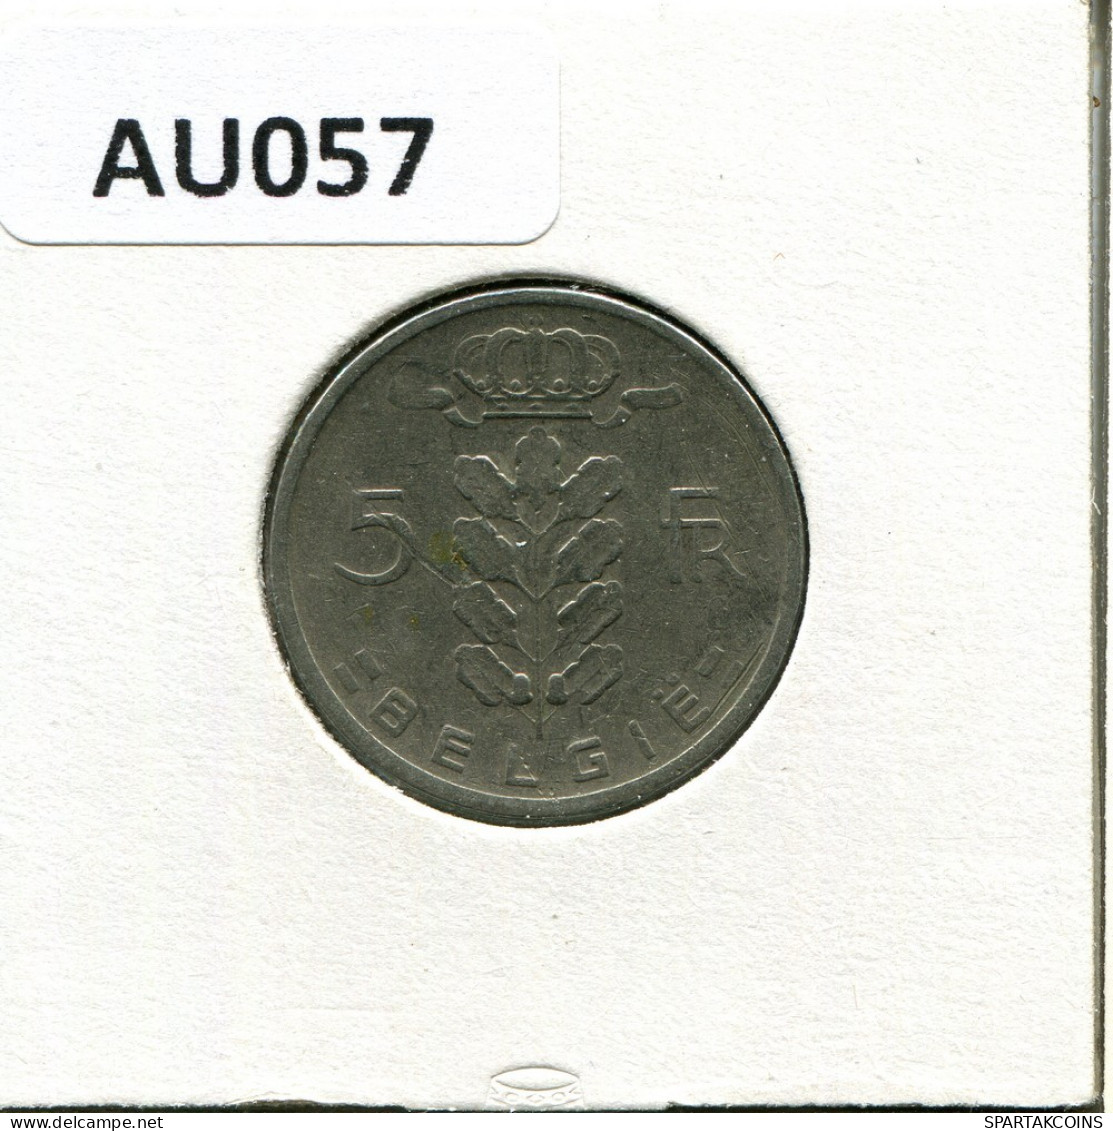 5 FRANCS 1960 DUTCH Text BELGIUM Coin #AU057.U.A - 5 Frank